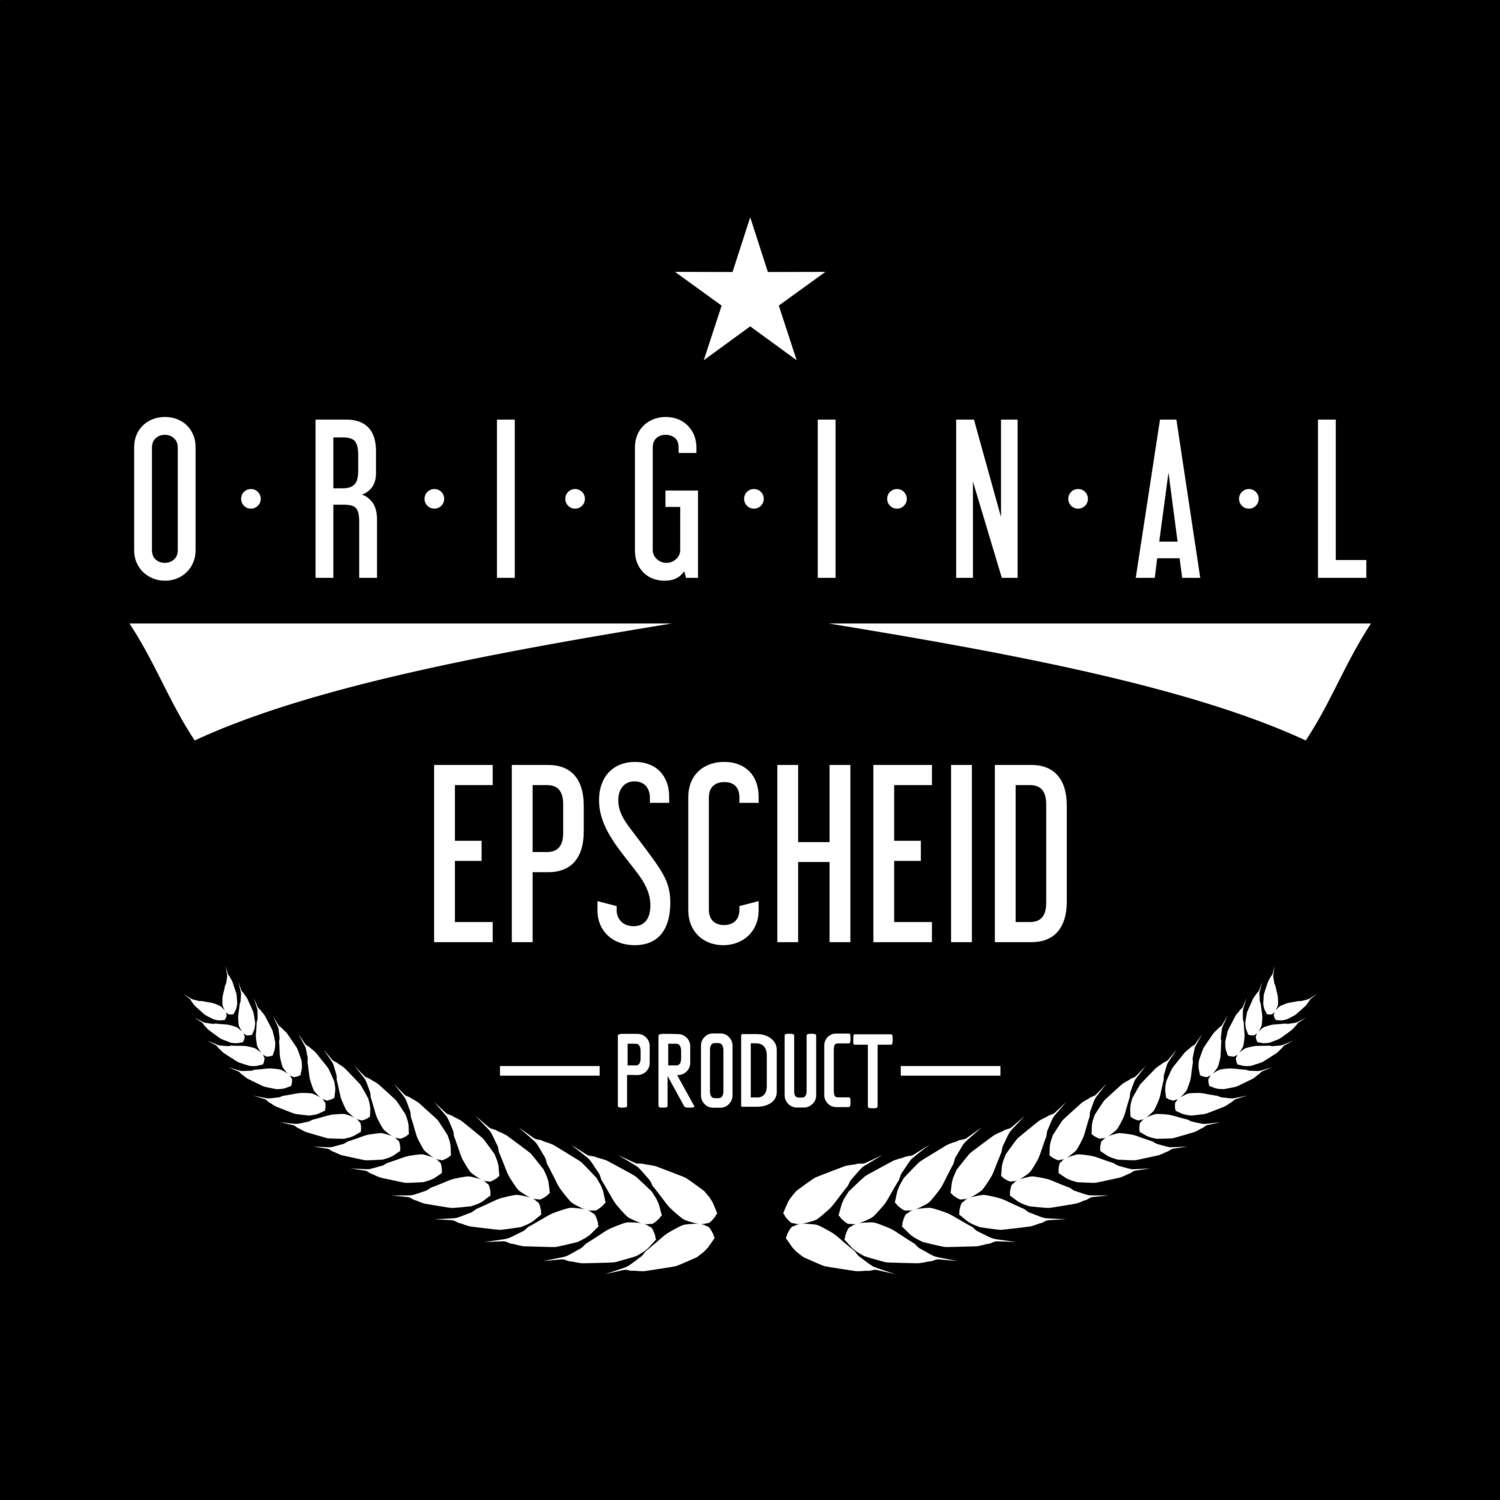 Epscheid T-Shirt »Original Product«